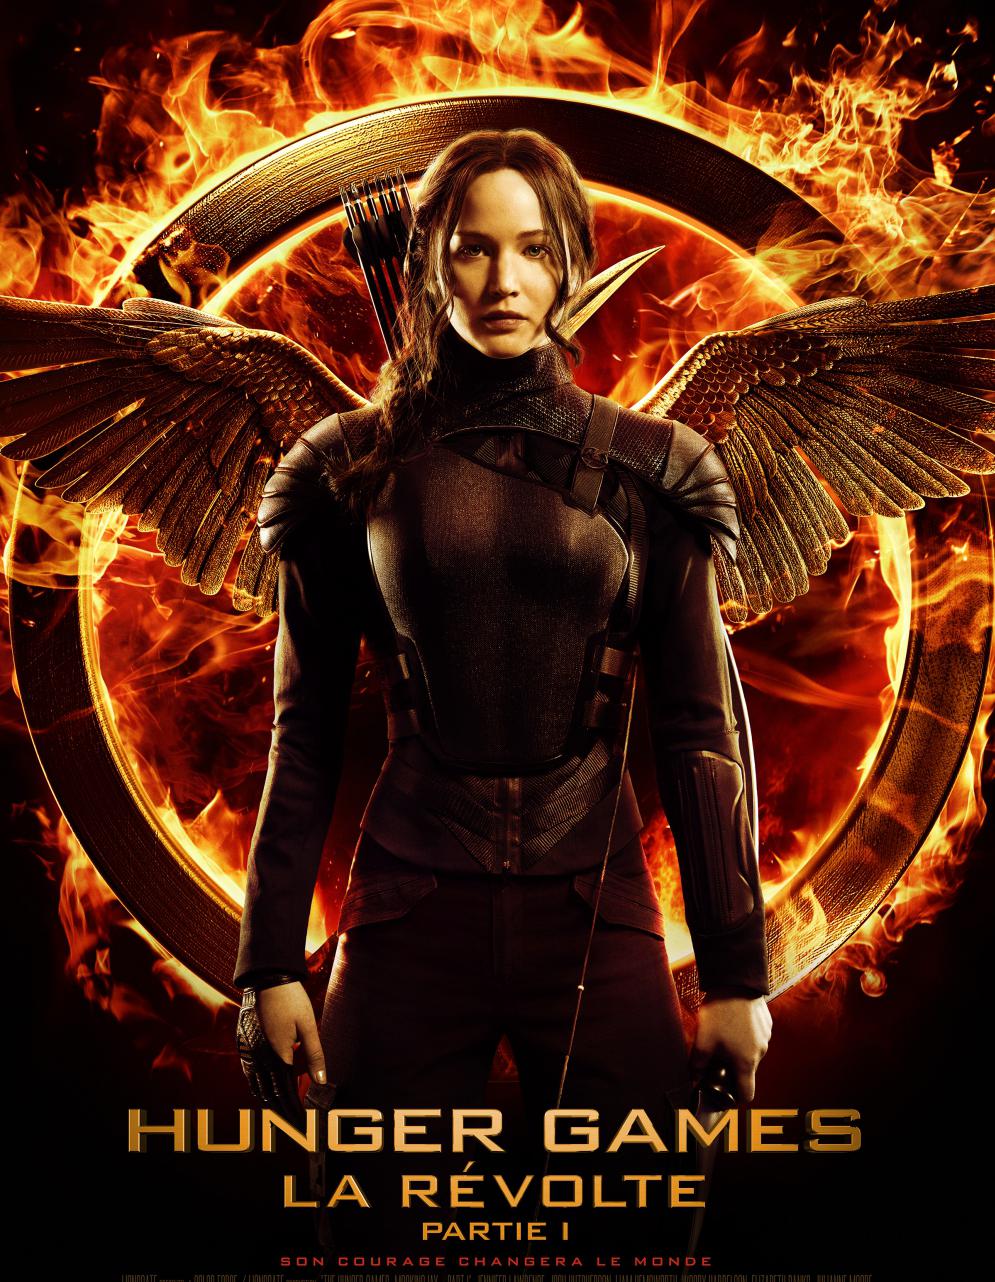 Hunger Games 3 découvrez la bandeannonce de 'La Révolte, partie 1' Elle